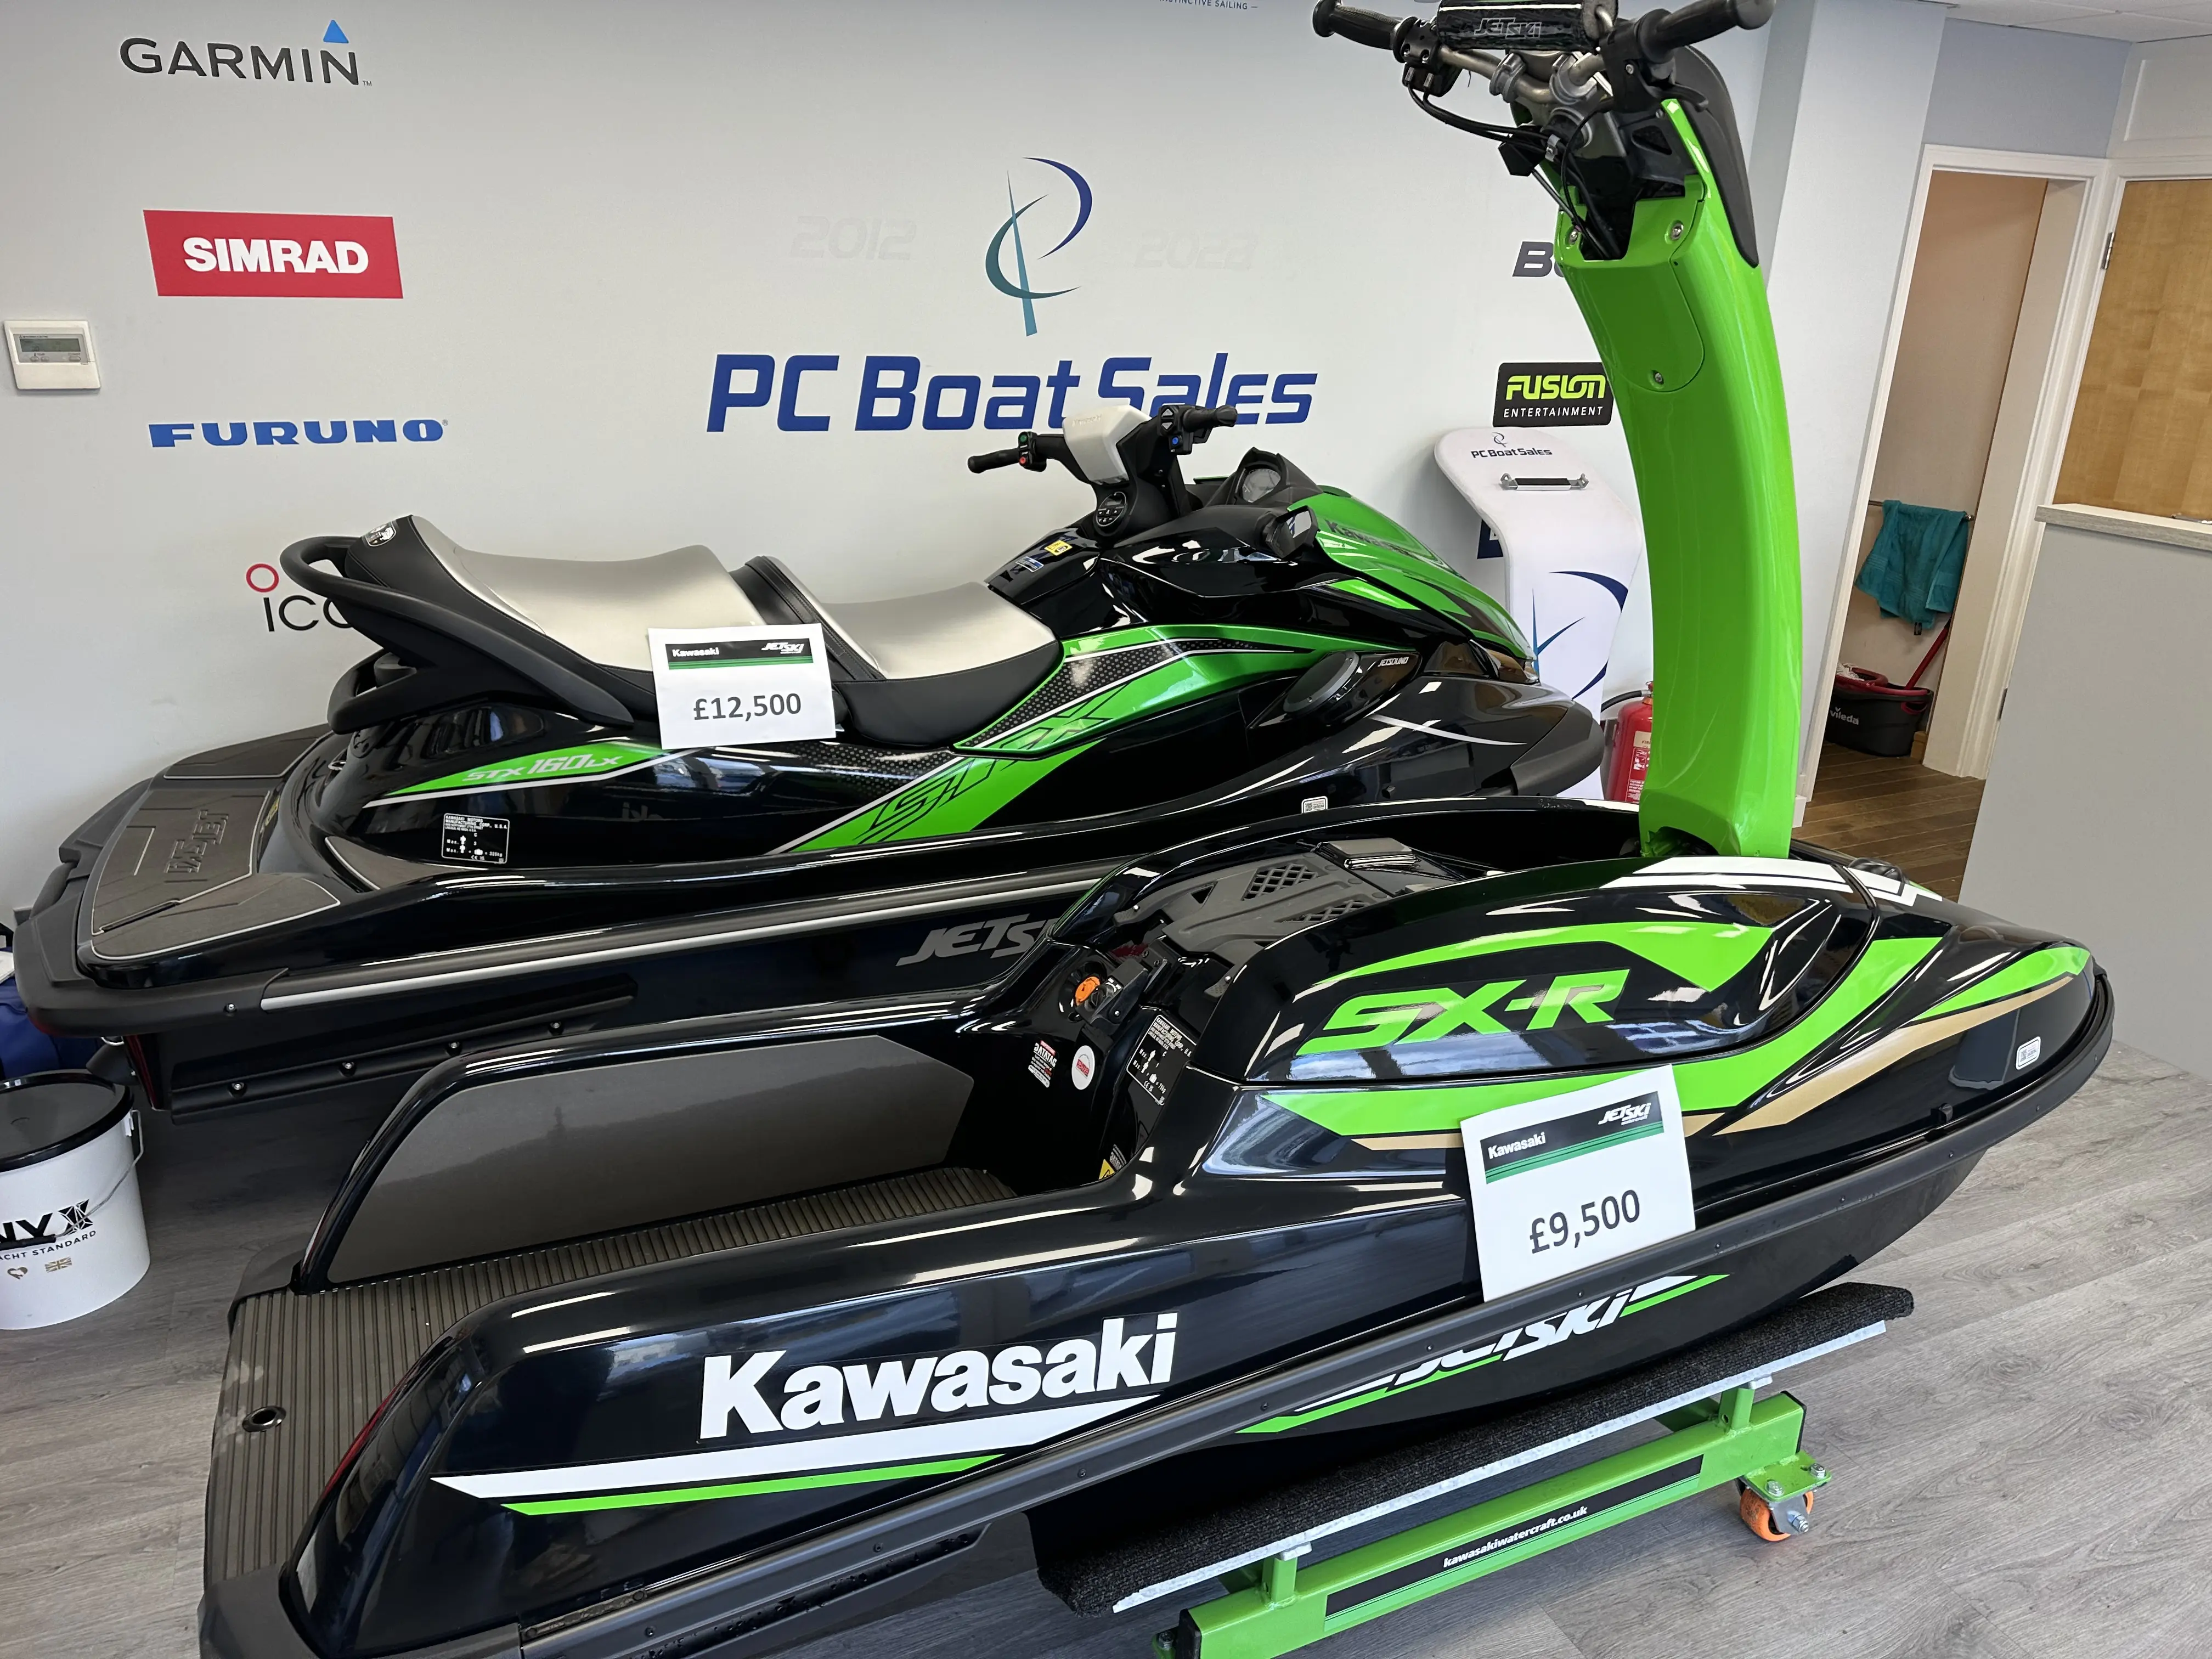 2022 Kawasaki sxr stand up jet ski